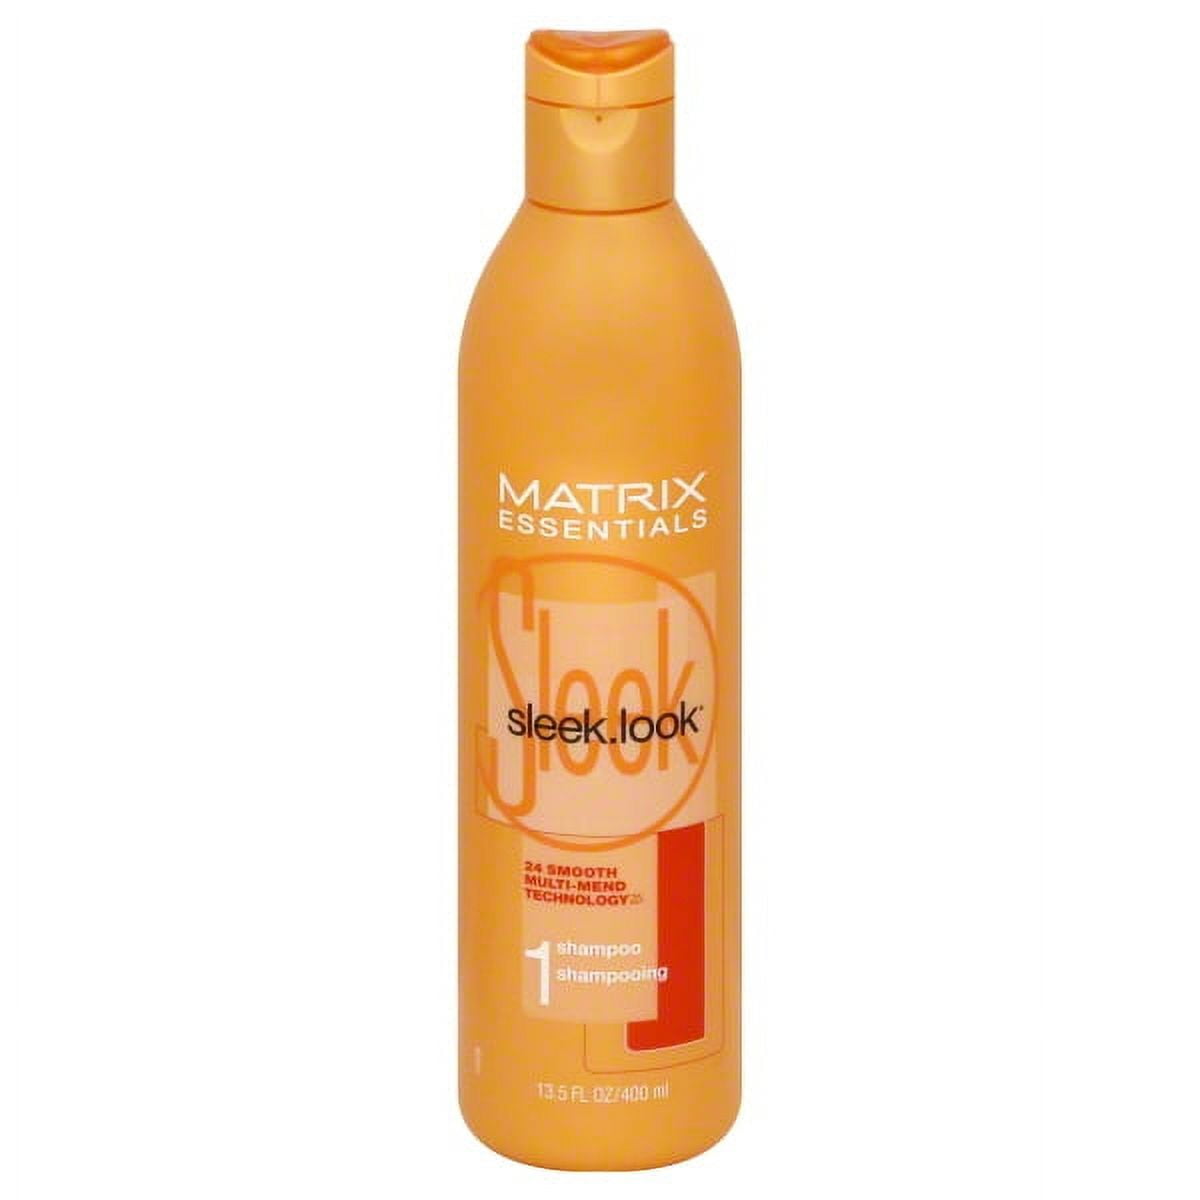 Matrix Matrix Essentials Sleek.Look Shampoo, 13.5 oz 